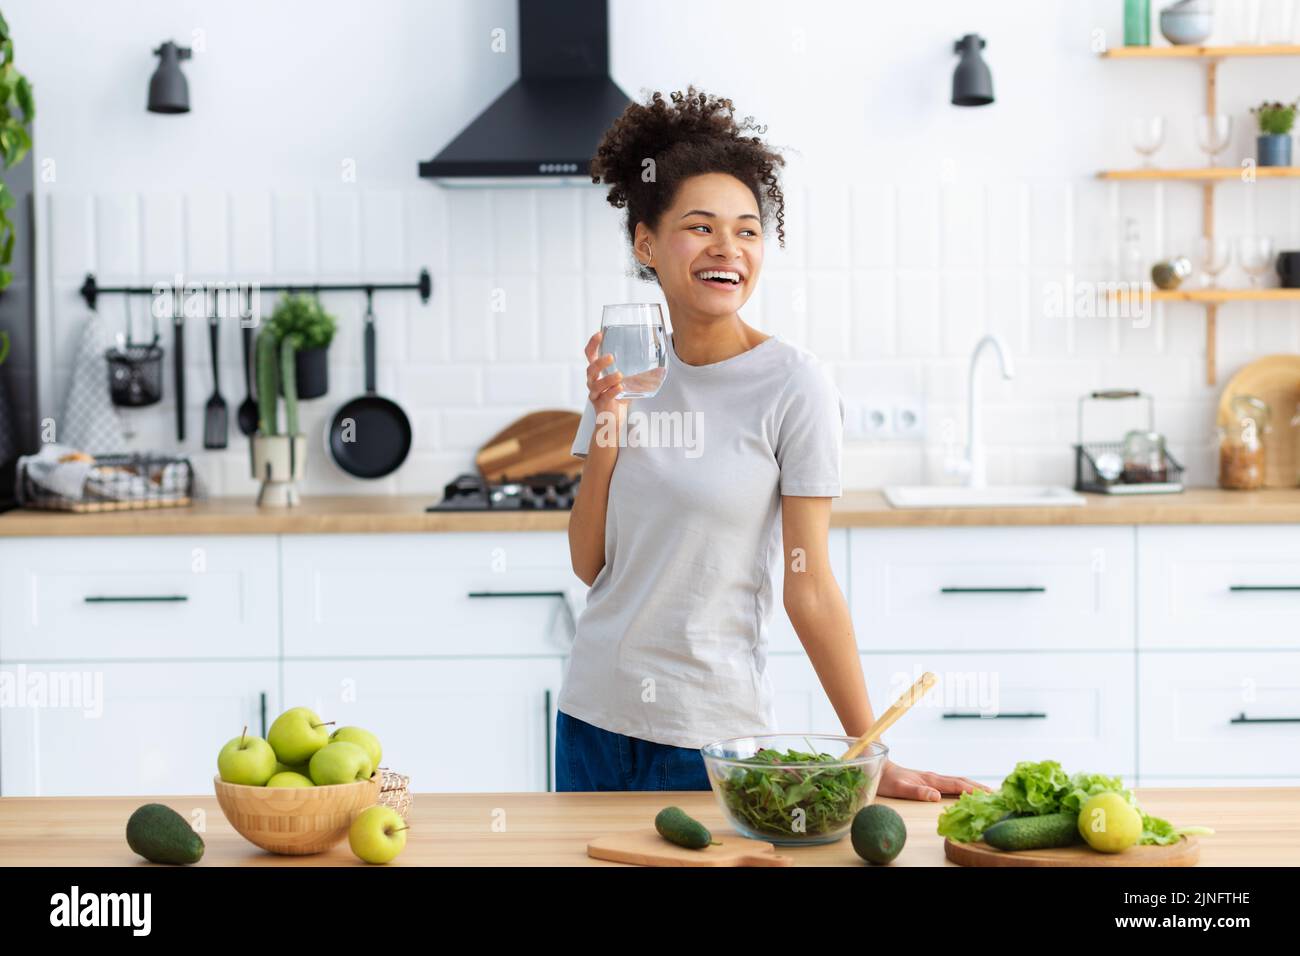 Gesunde Ernährung Essen African American junge weibliche Vorbereitung Salat in der Küche zu Hause Frau Kochen gesunde Lebensmittel Stockfoto